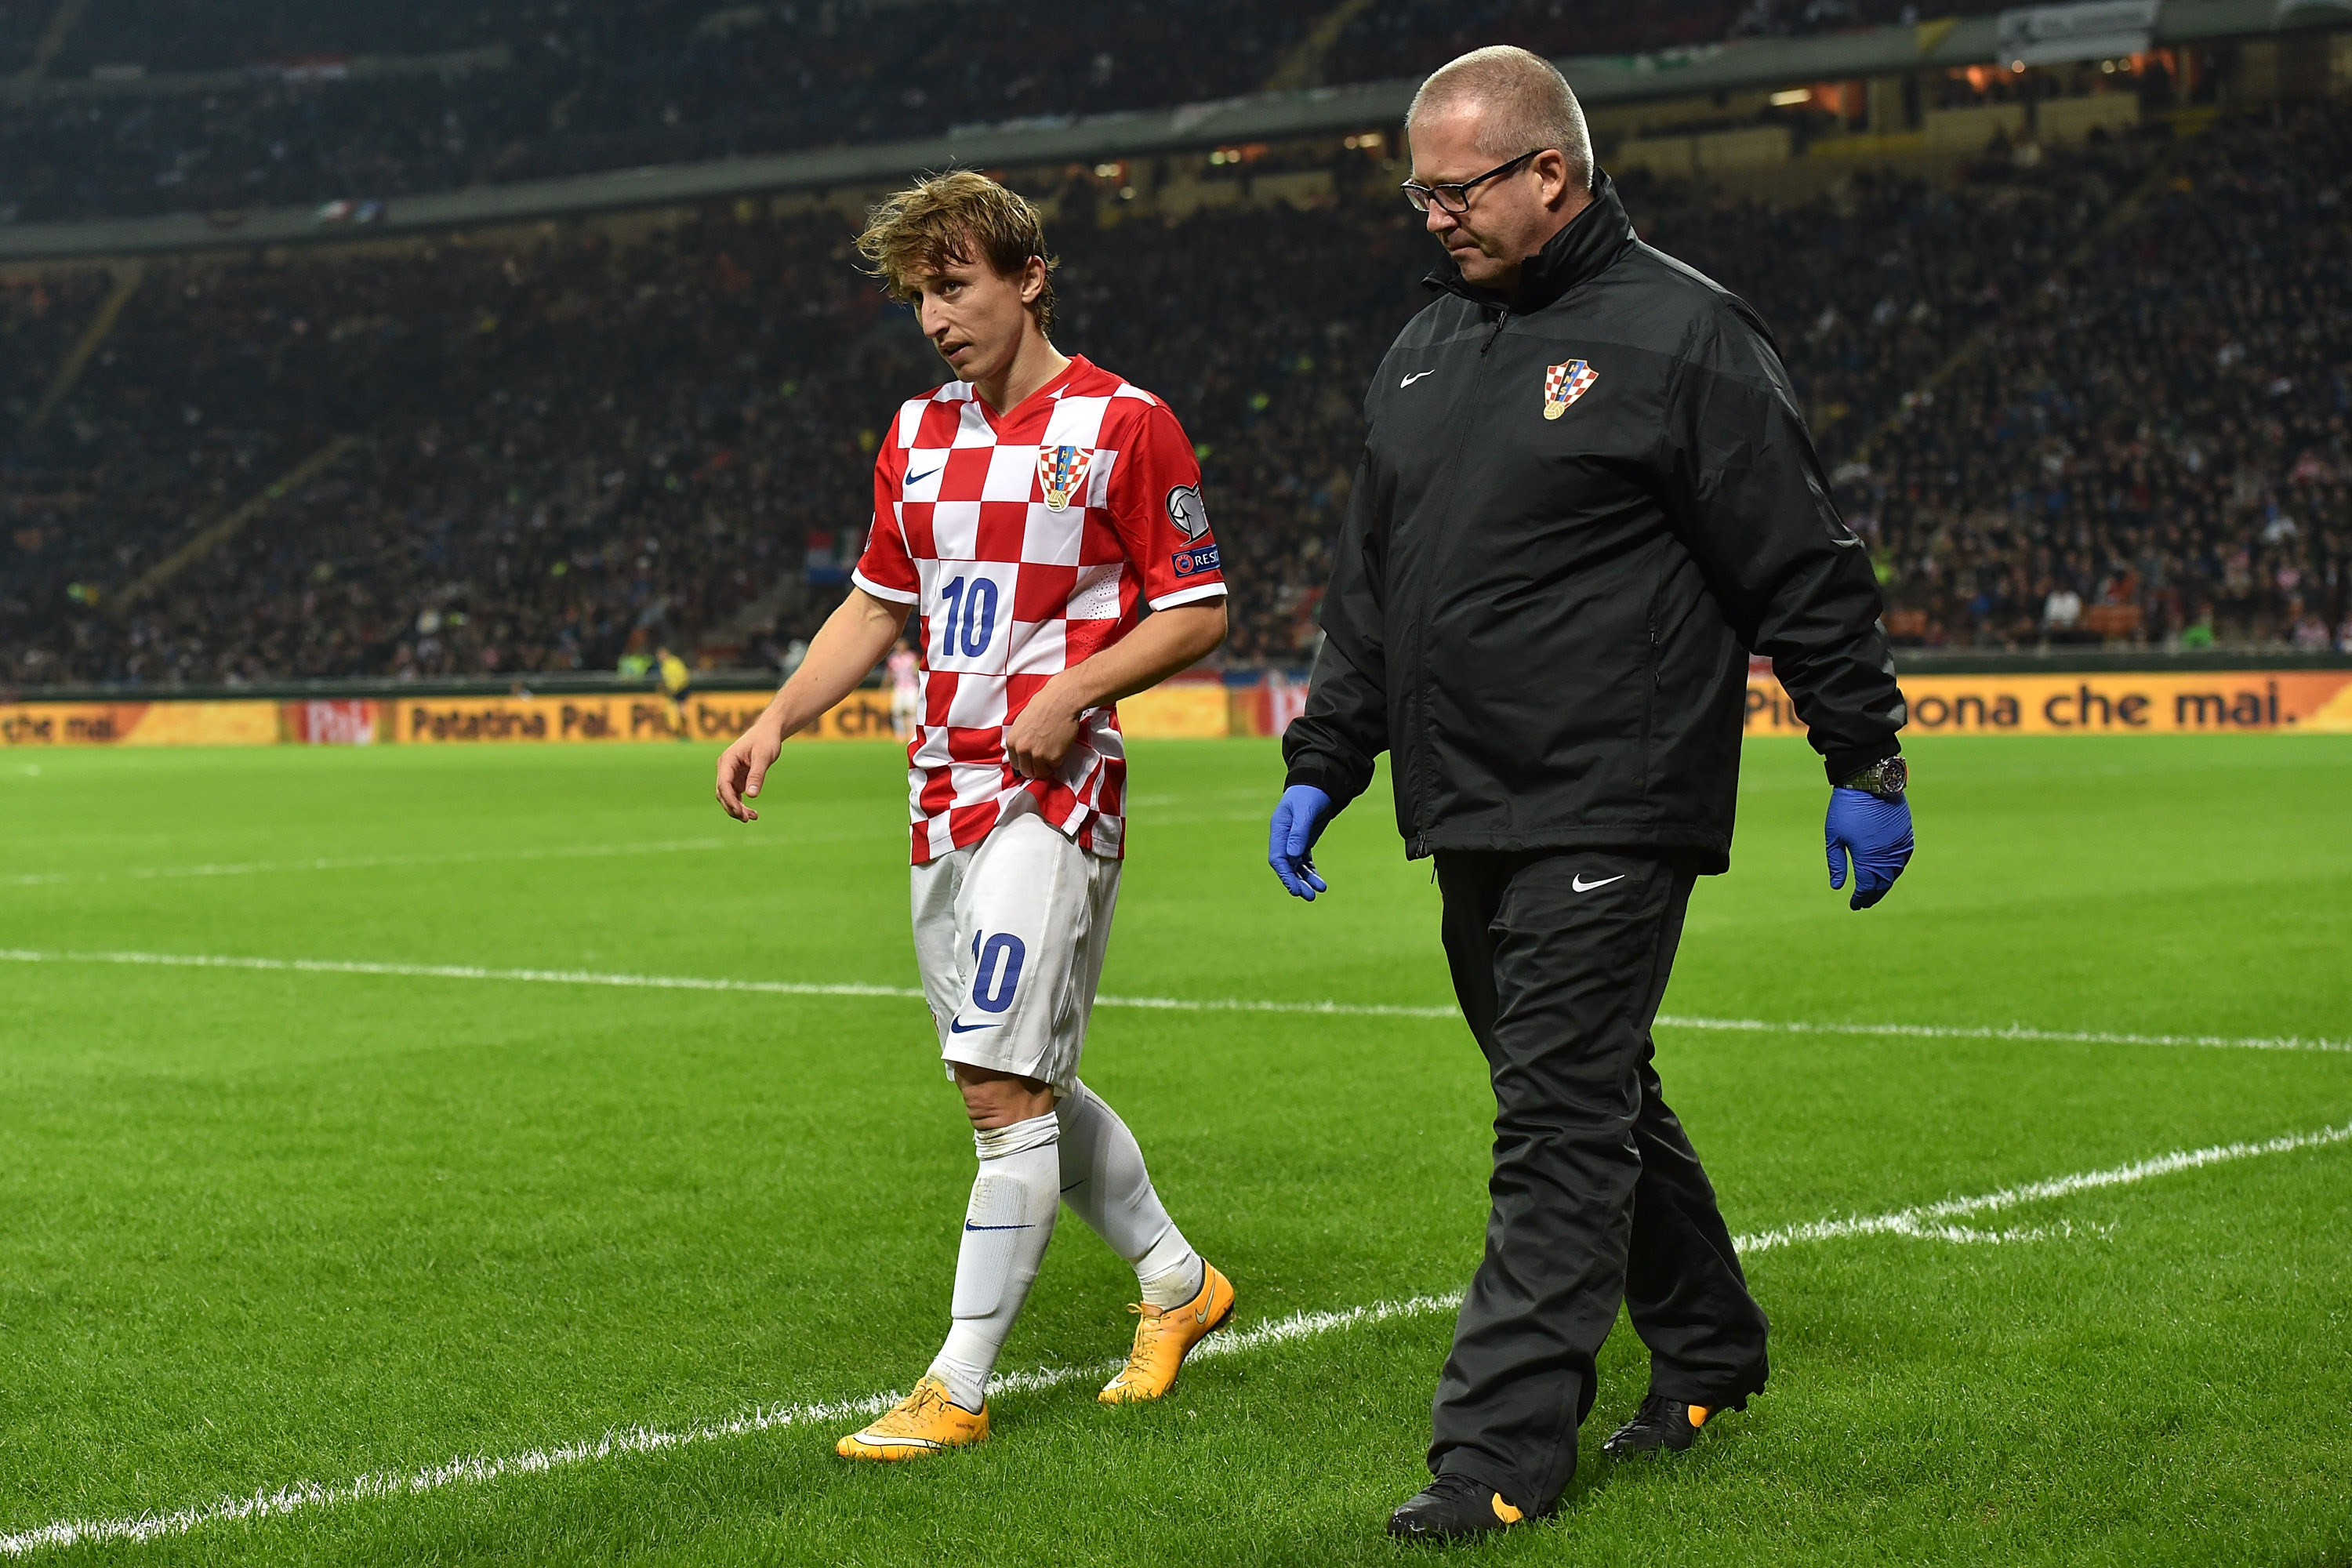 Rマドリードのクロアチア代表mfモドリッチが左太もも負傷で長期離脱か 全治3 4か月と地元紙 フットボールゾーン